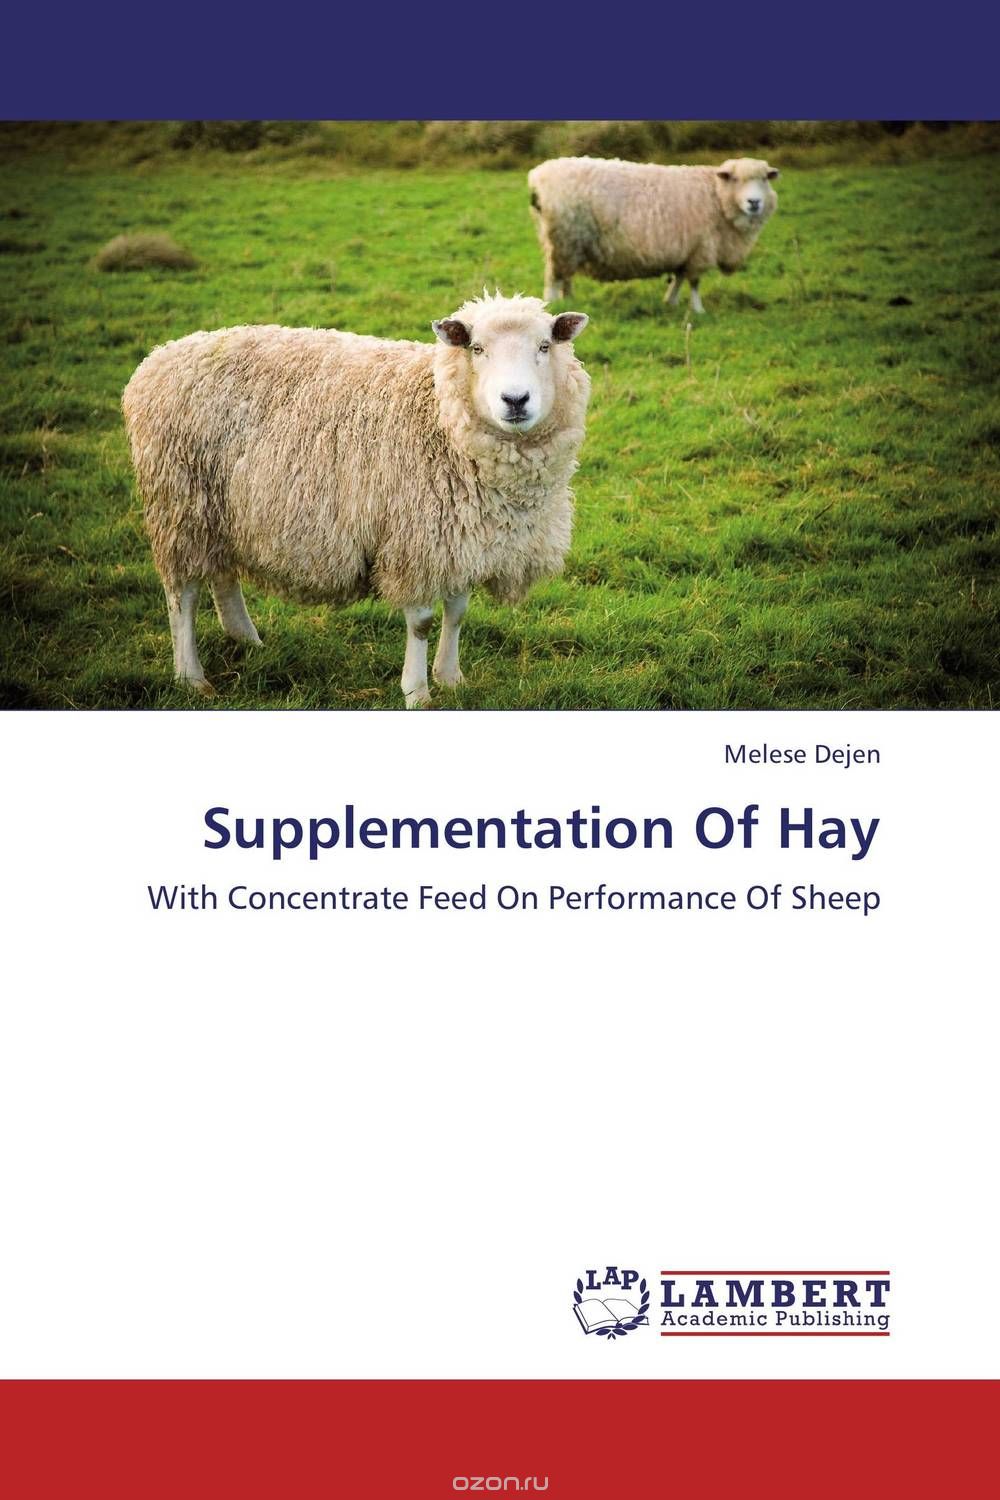 Скачать книгу "Supplementation Of Hay"